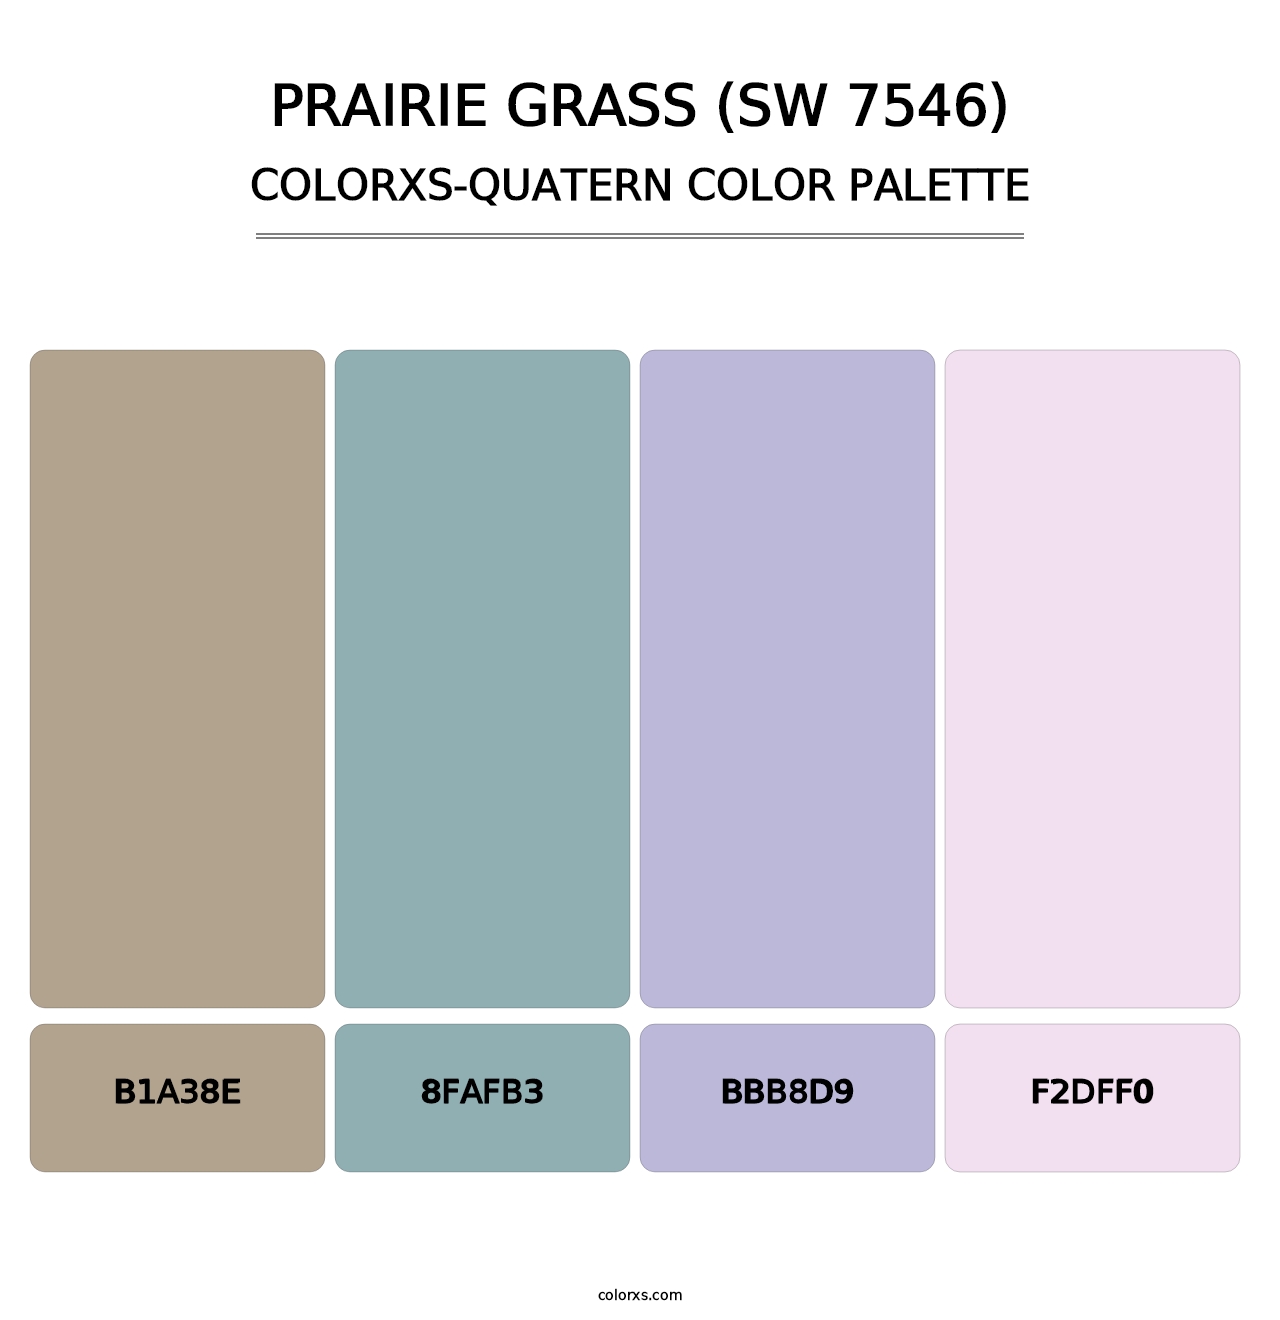 Prairie Grass (SW 7546) - Colorxs Quatern Palette